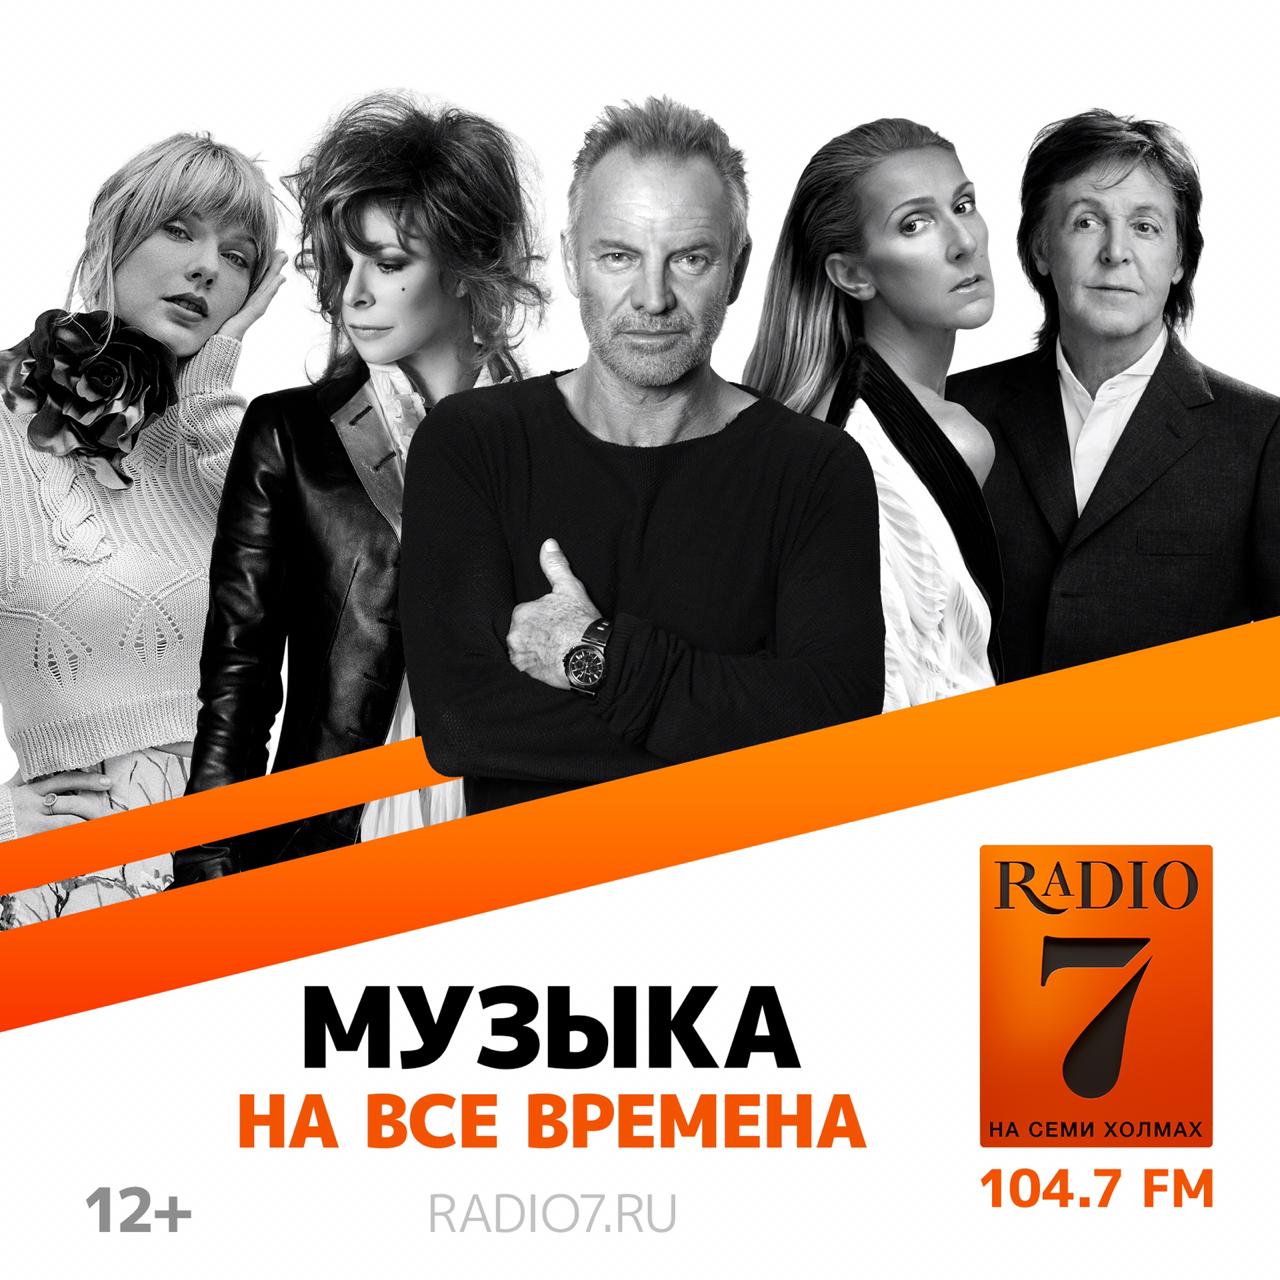 Радио семь на семи холмах что играло. Радио на семи холмах. Радио 7 на 7. Радио 7 на семи холмах Москва. Радио 7 реклама.